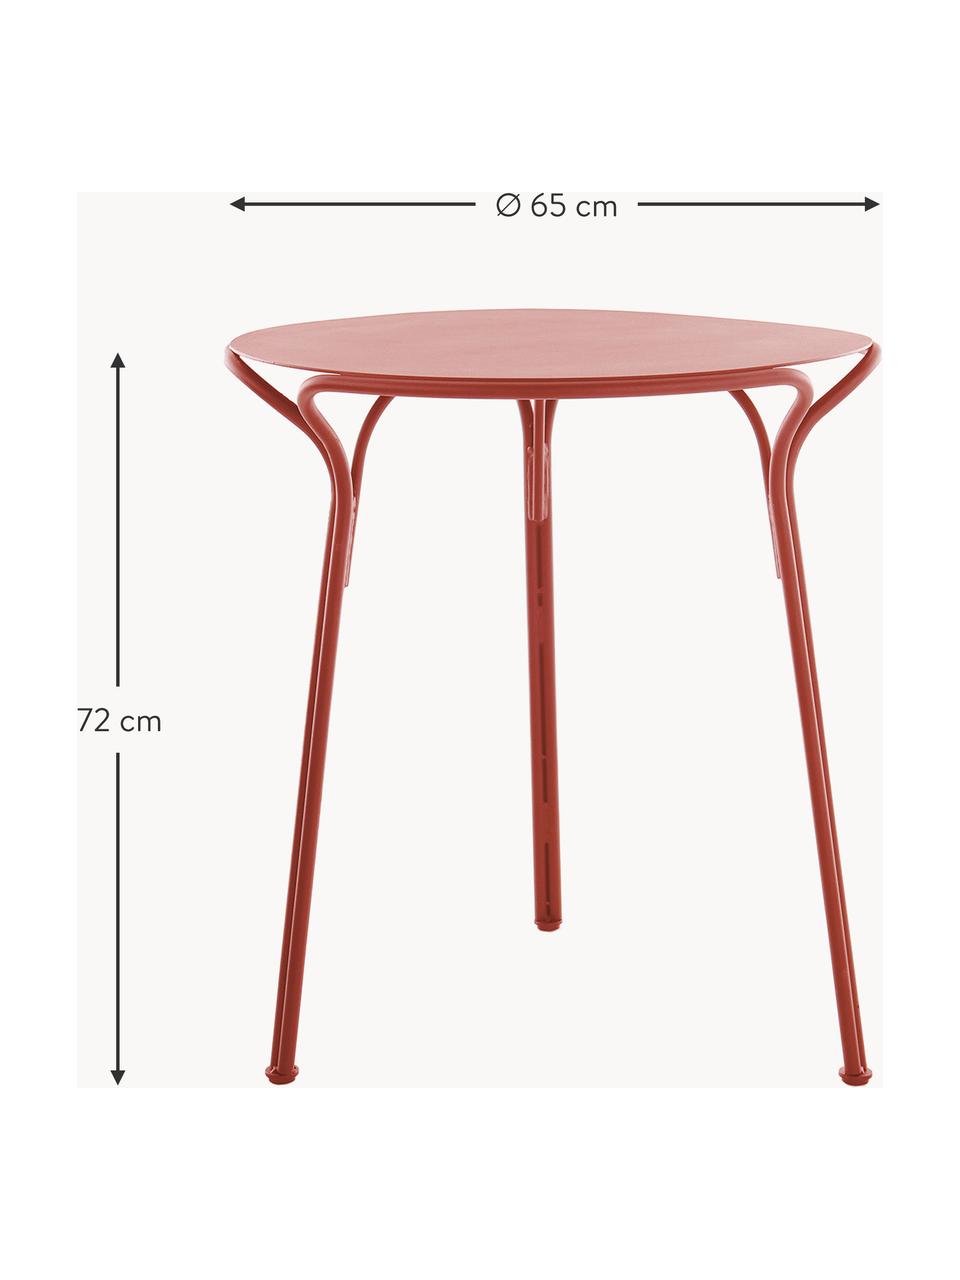 Kulatý zahradní stůl Hiray, Ø 65 cm, Pozinkovaná lakovaná ocel, Červená, Ø 65 cm, V 72 cm